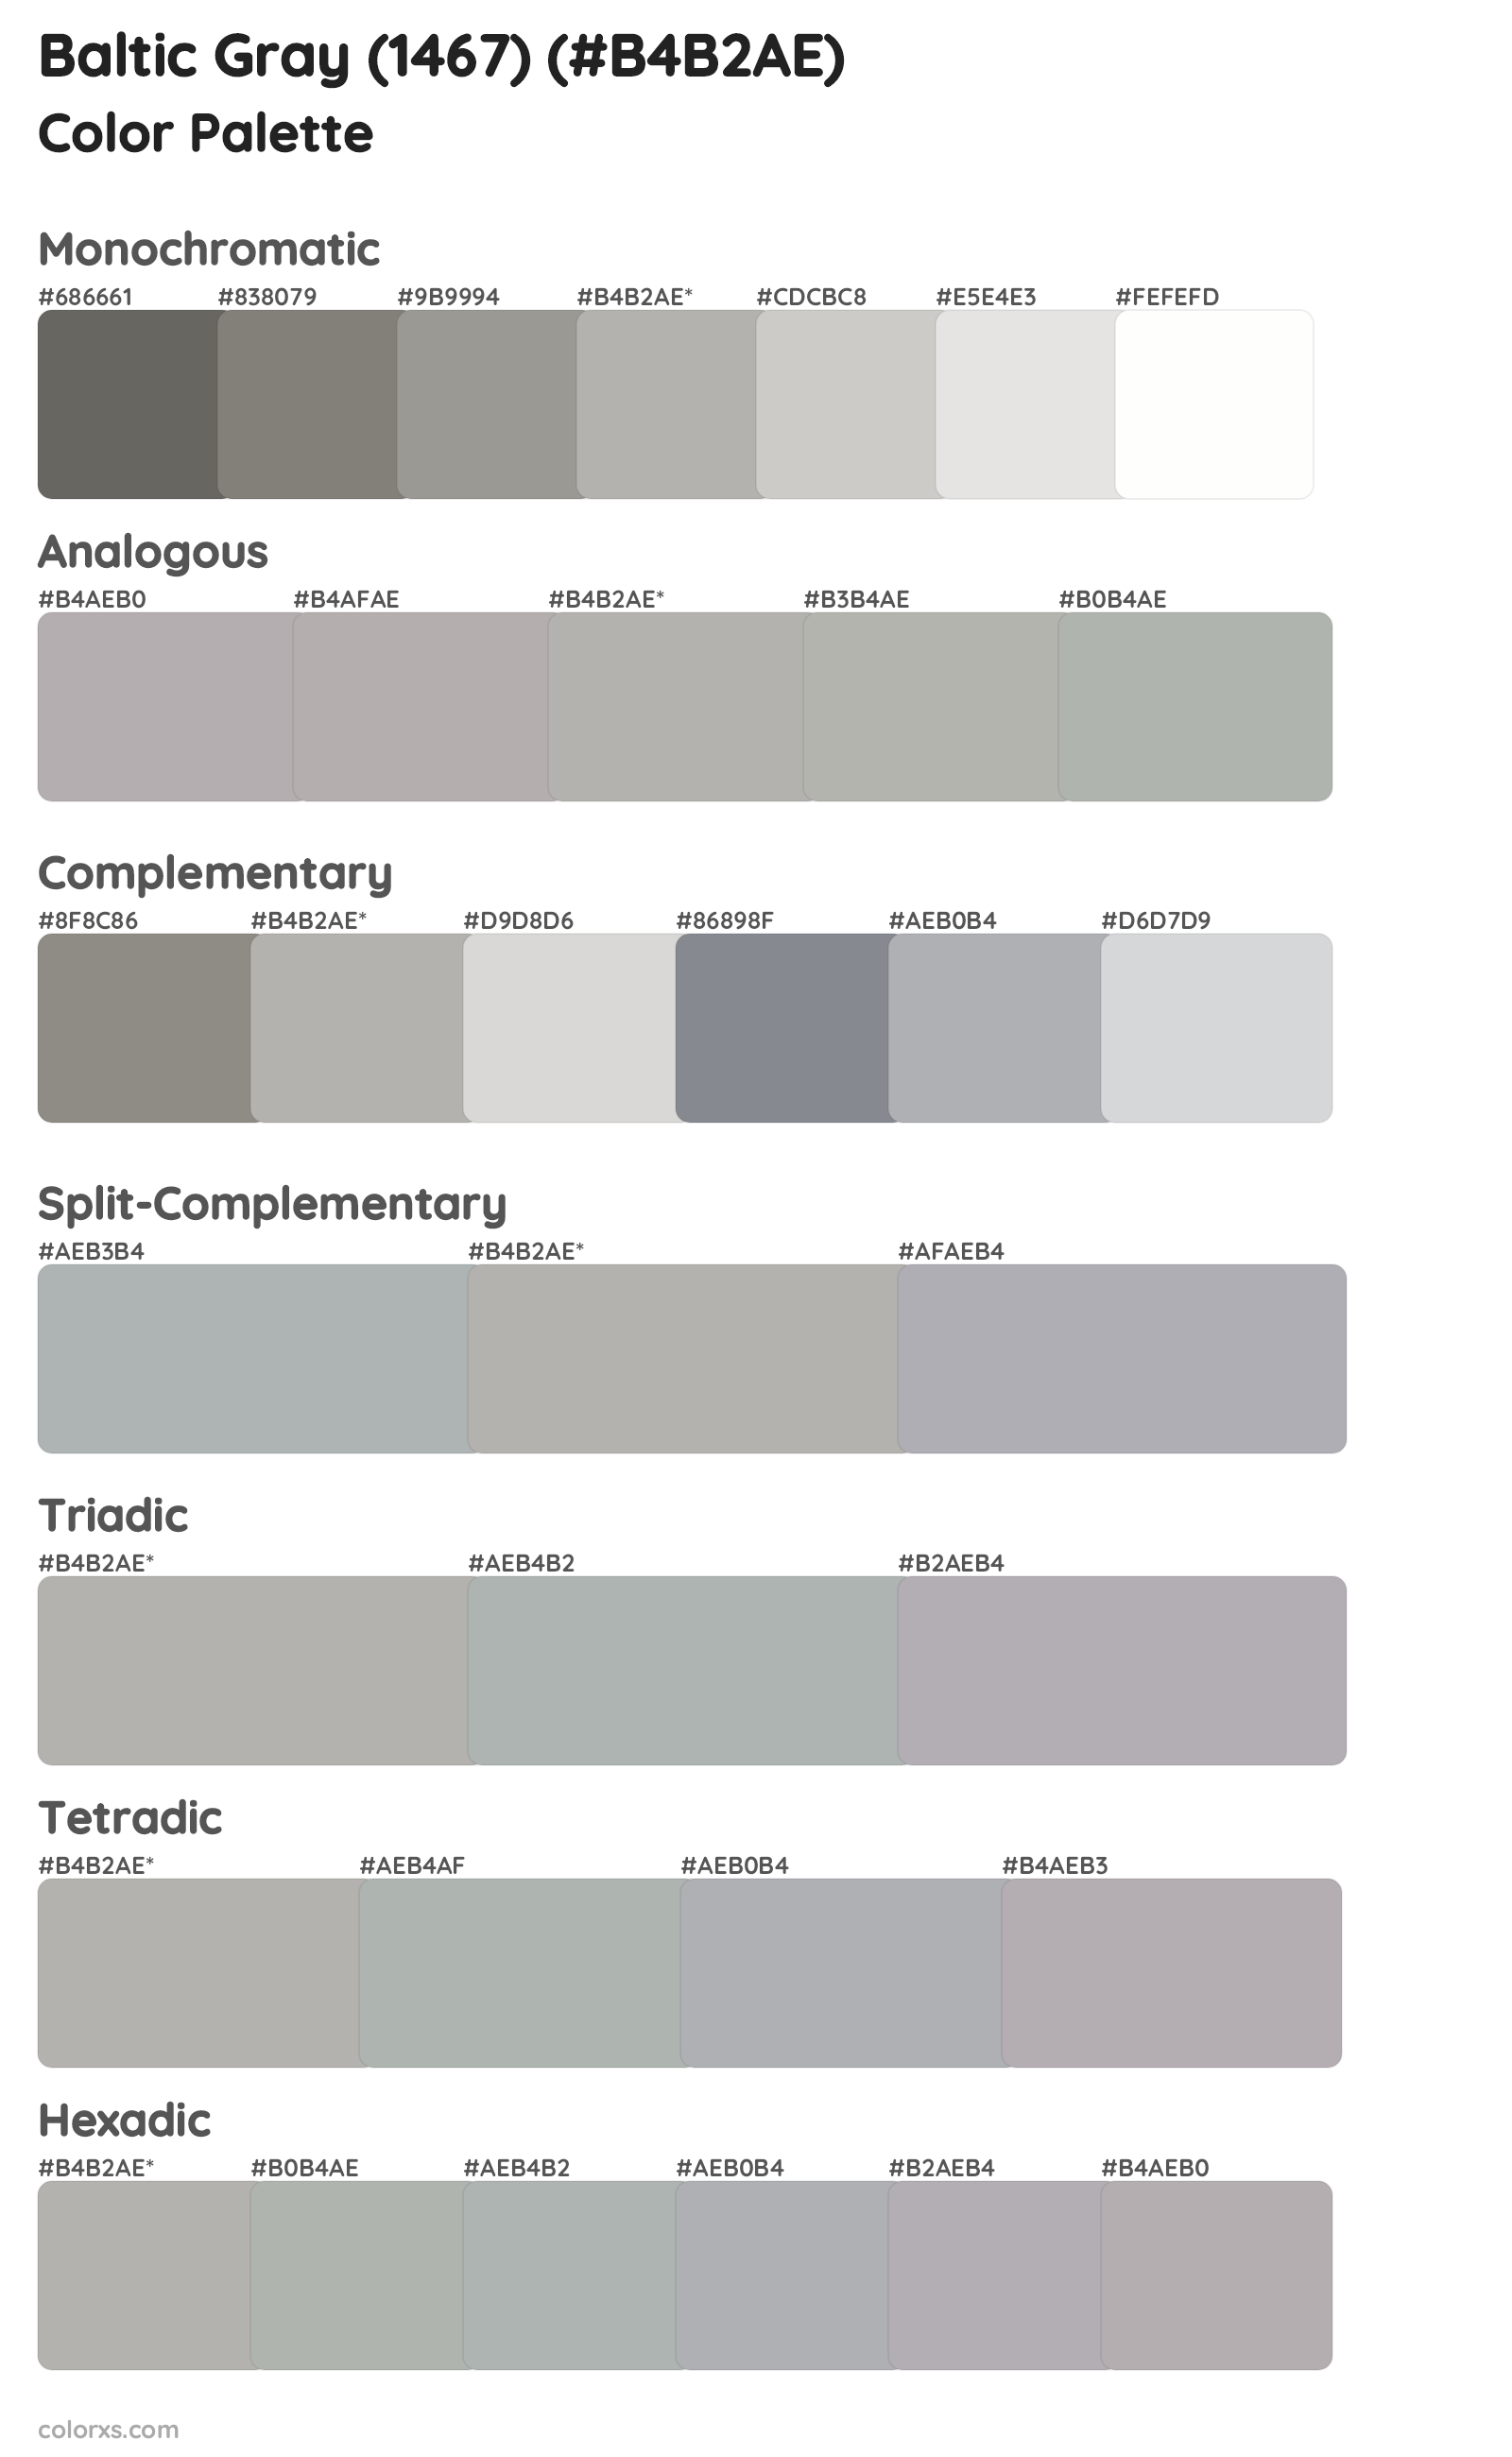 Baltic Gray (1467) Color Scheme Palettes